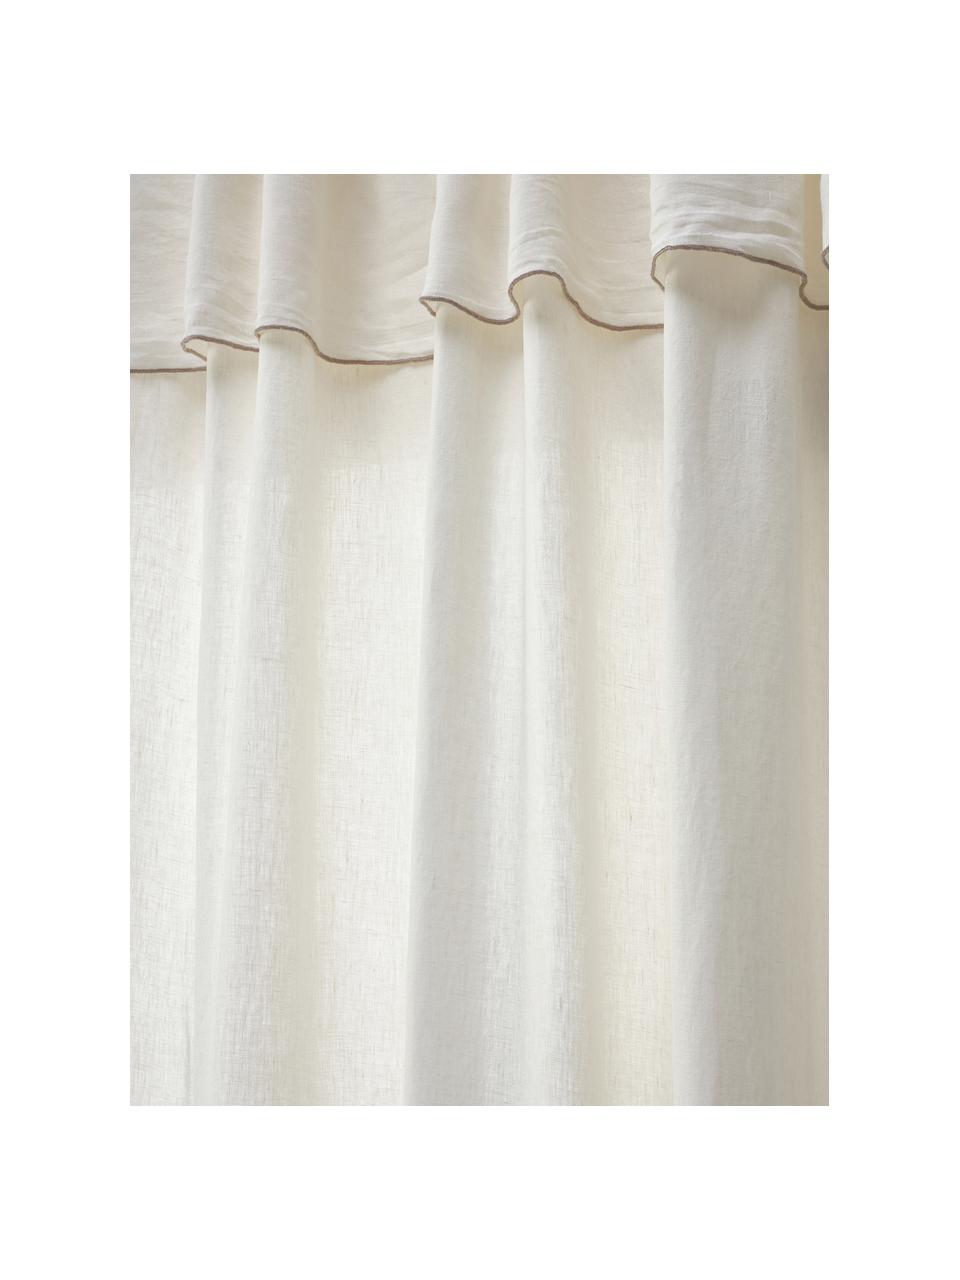 Cortinas semitransparente de lino con dobladillo Eleonara, 2 uds., 100% lino, Blanco crema, gris pardo, An 145 x L 260 cm